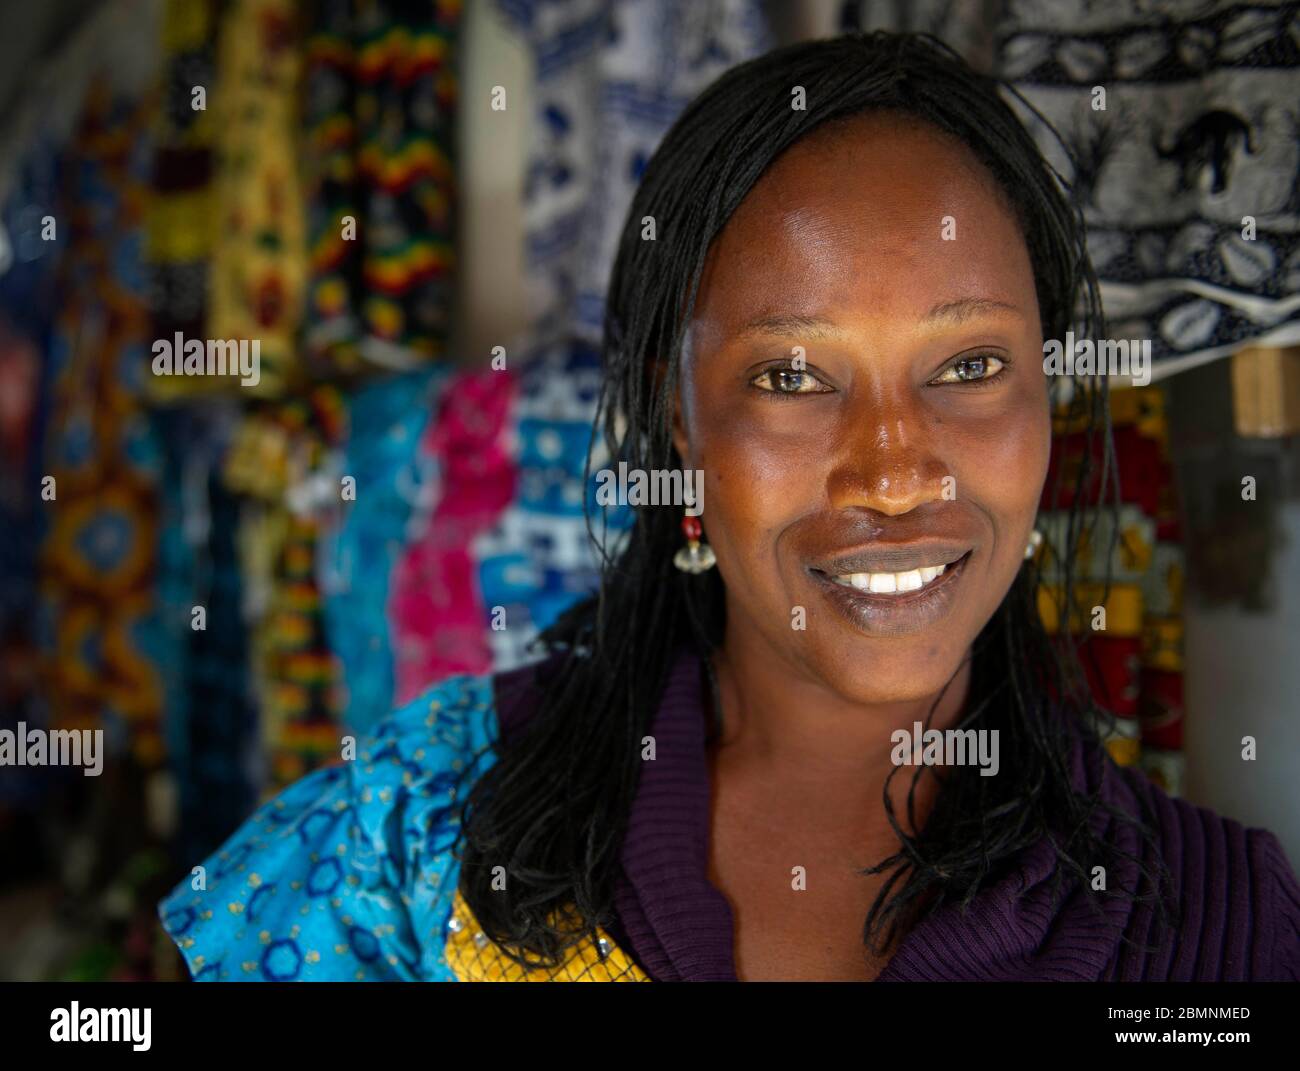 Senegalesische Frau posiert für ein Bild an ihrem Stoffstand in Dakar Senegal. Stockfoto